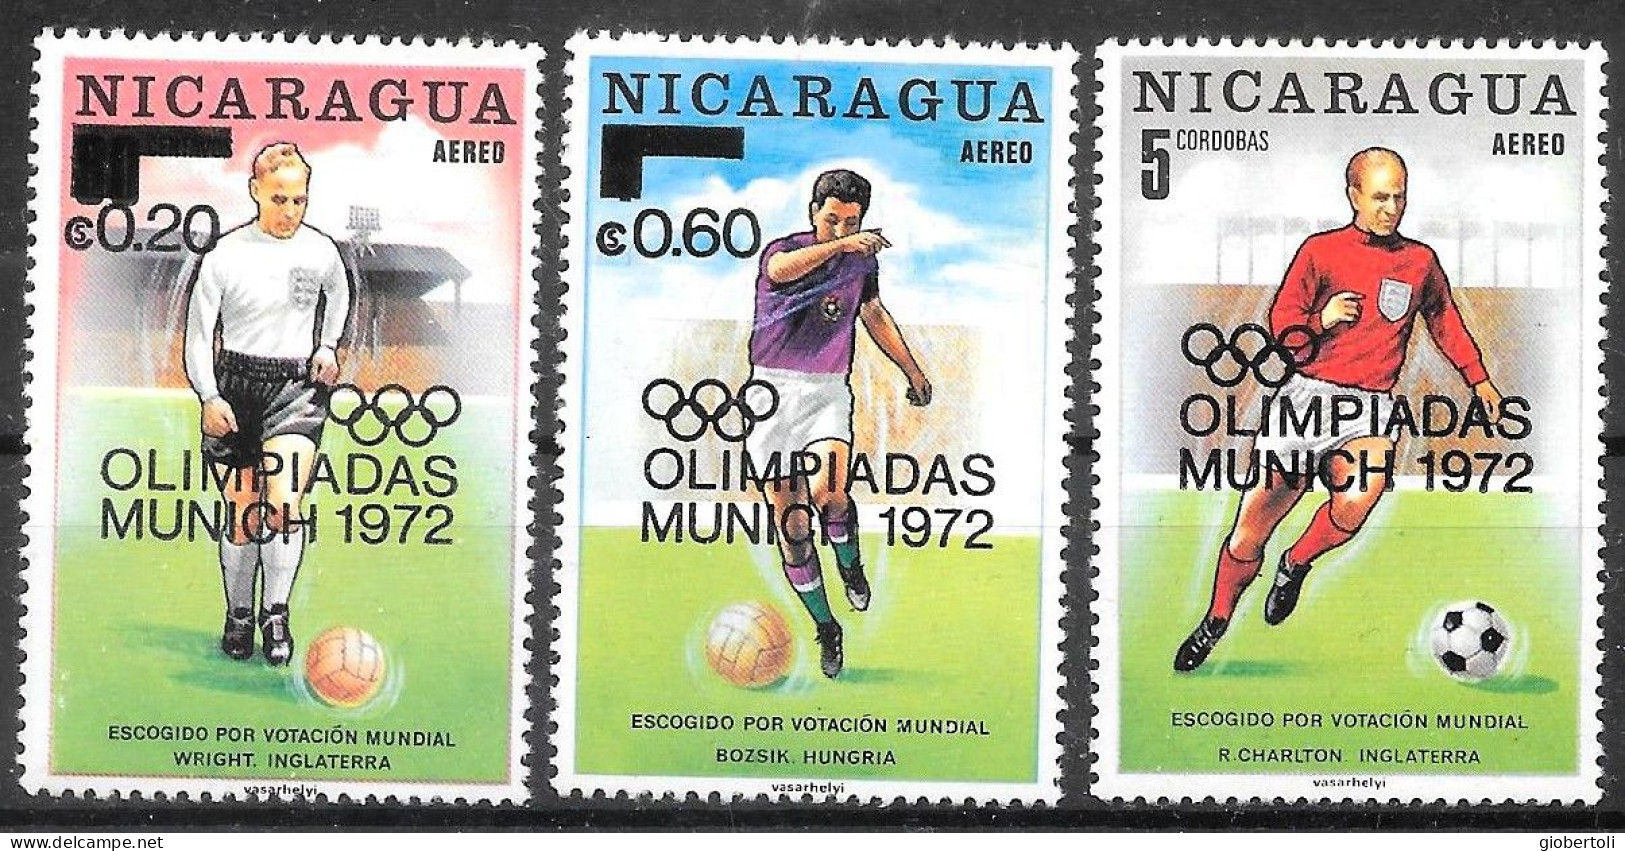 Nicaragua: Gioco Del Calcio, Football Game, Le Jeu Du Calcio - Verano 1972: Munich